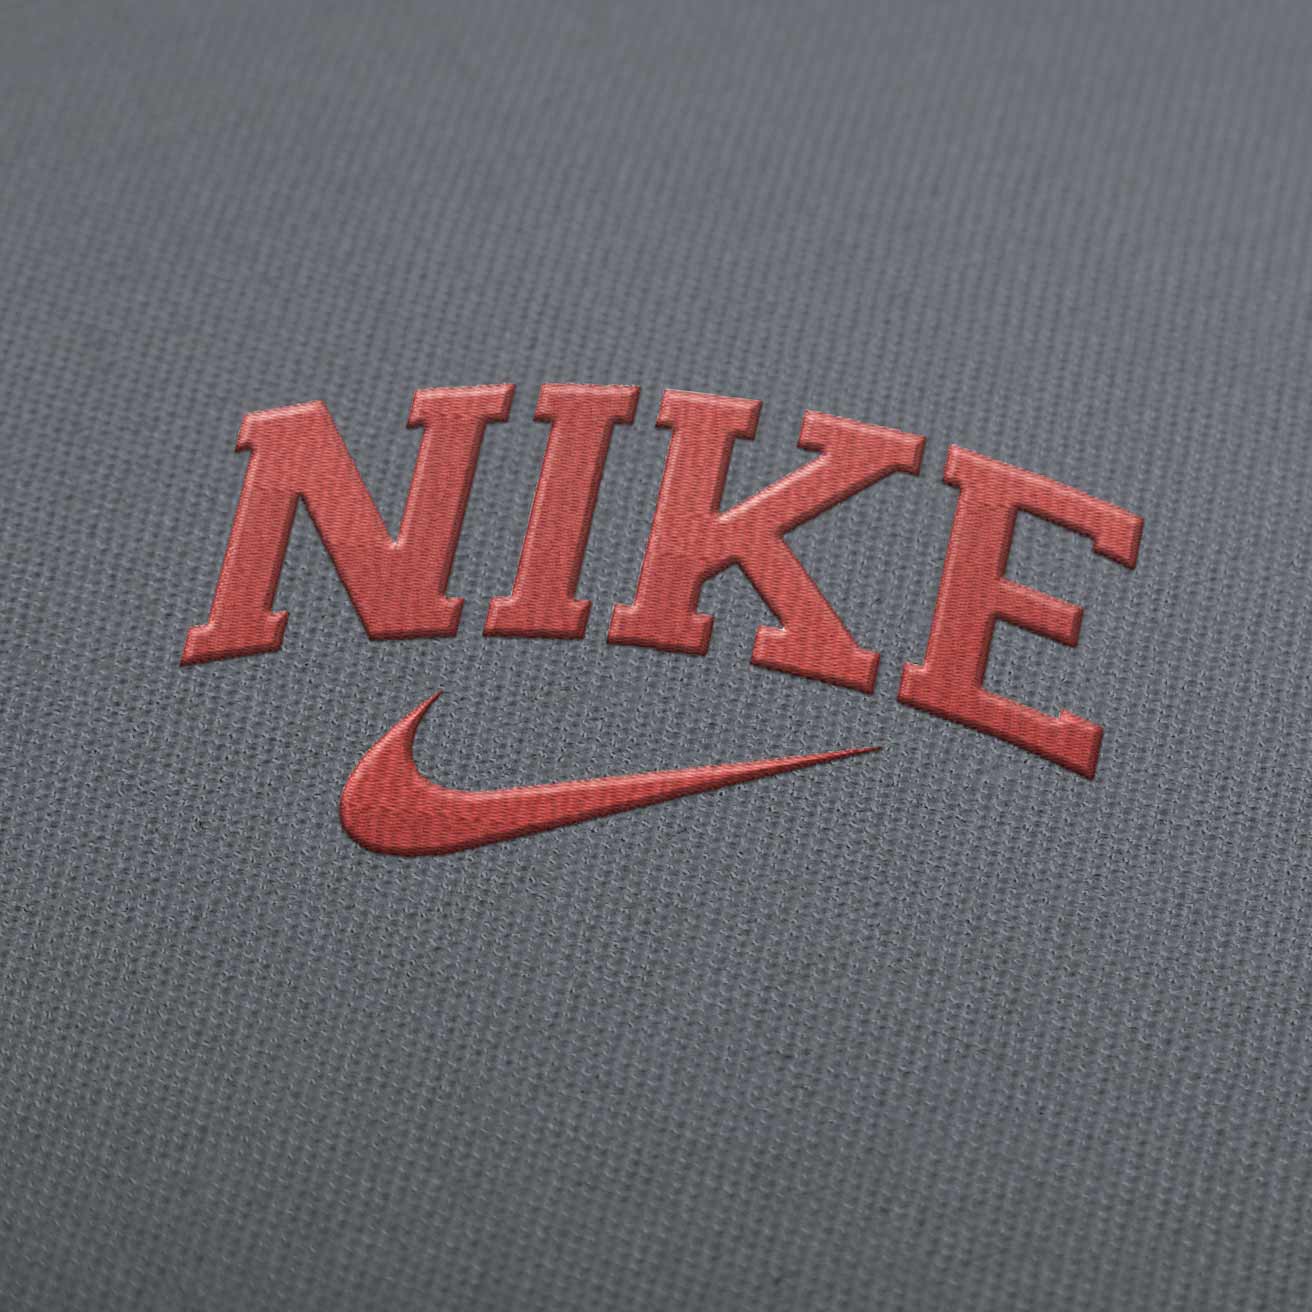 avaro Estresante Ocupar Nike Old Logo Borderless Embroidery Design Download - EmbroideryDownload